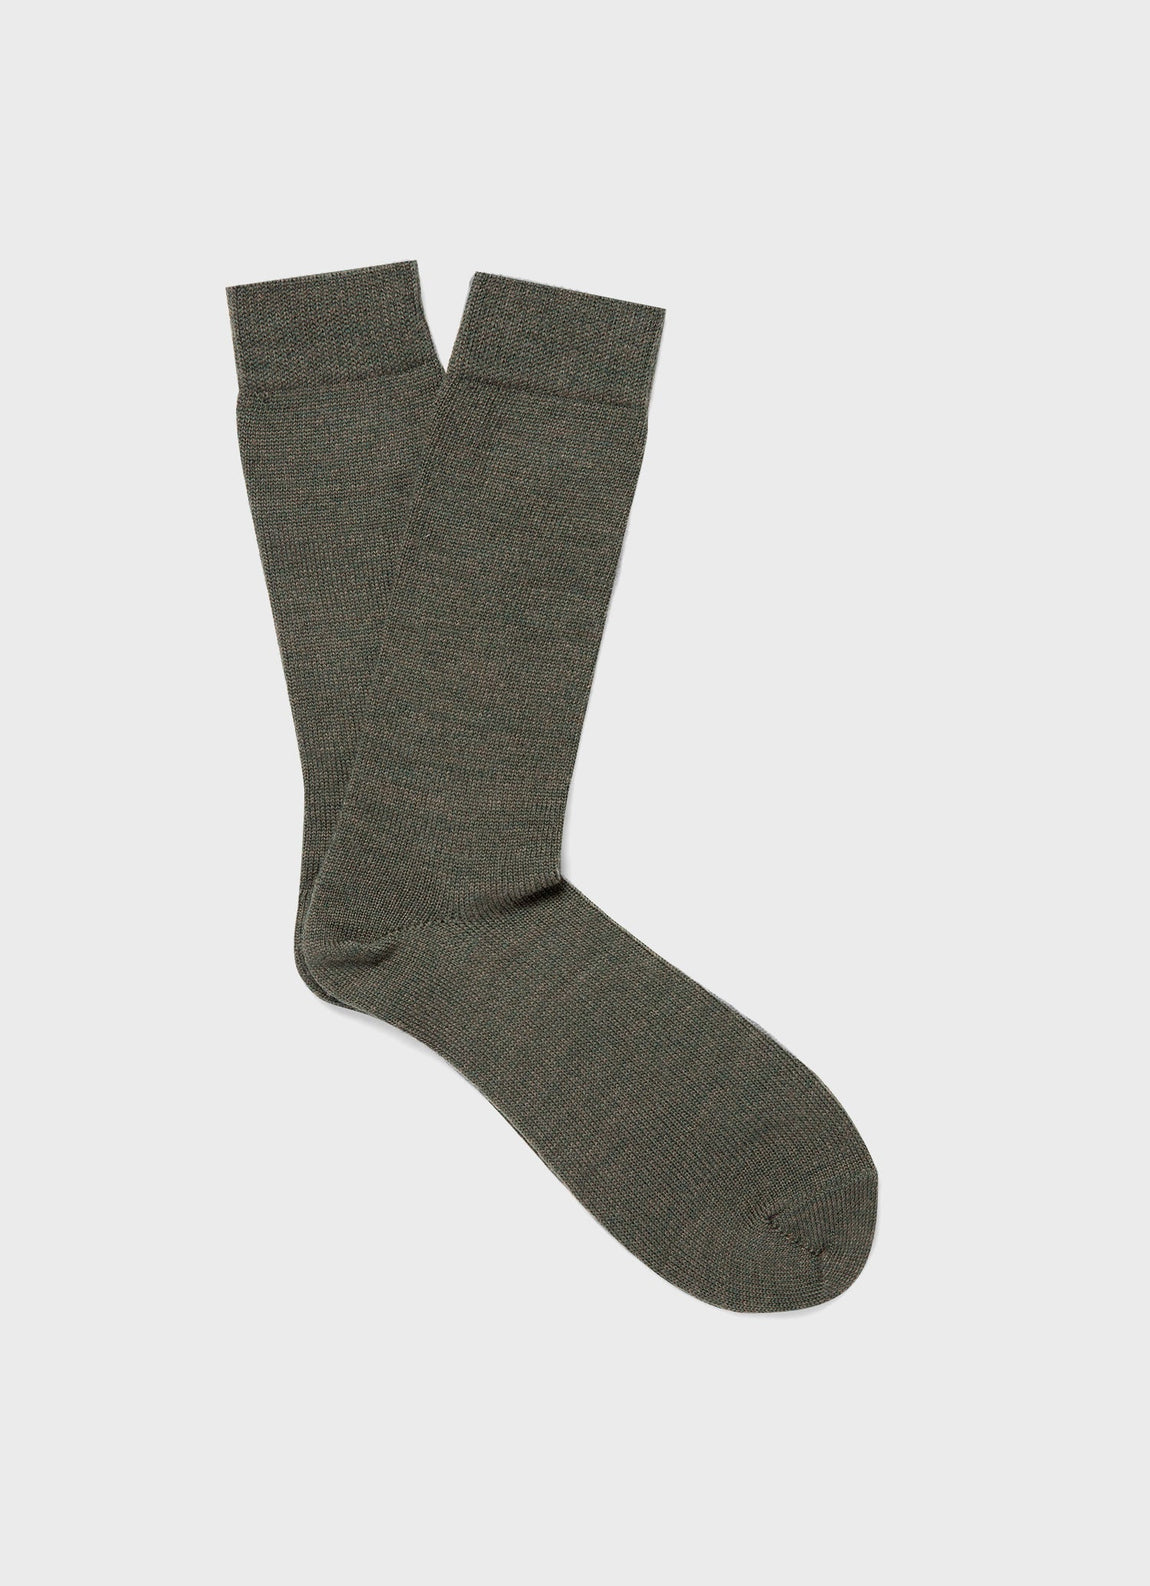 Men's Merino Wool Socks in Olive Twist